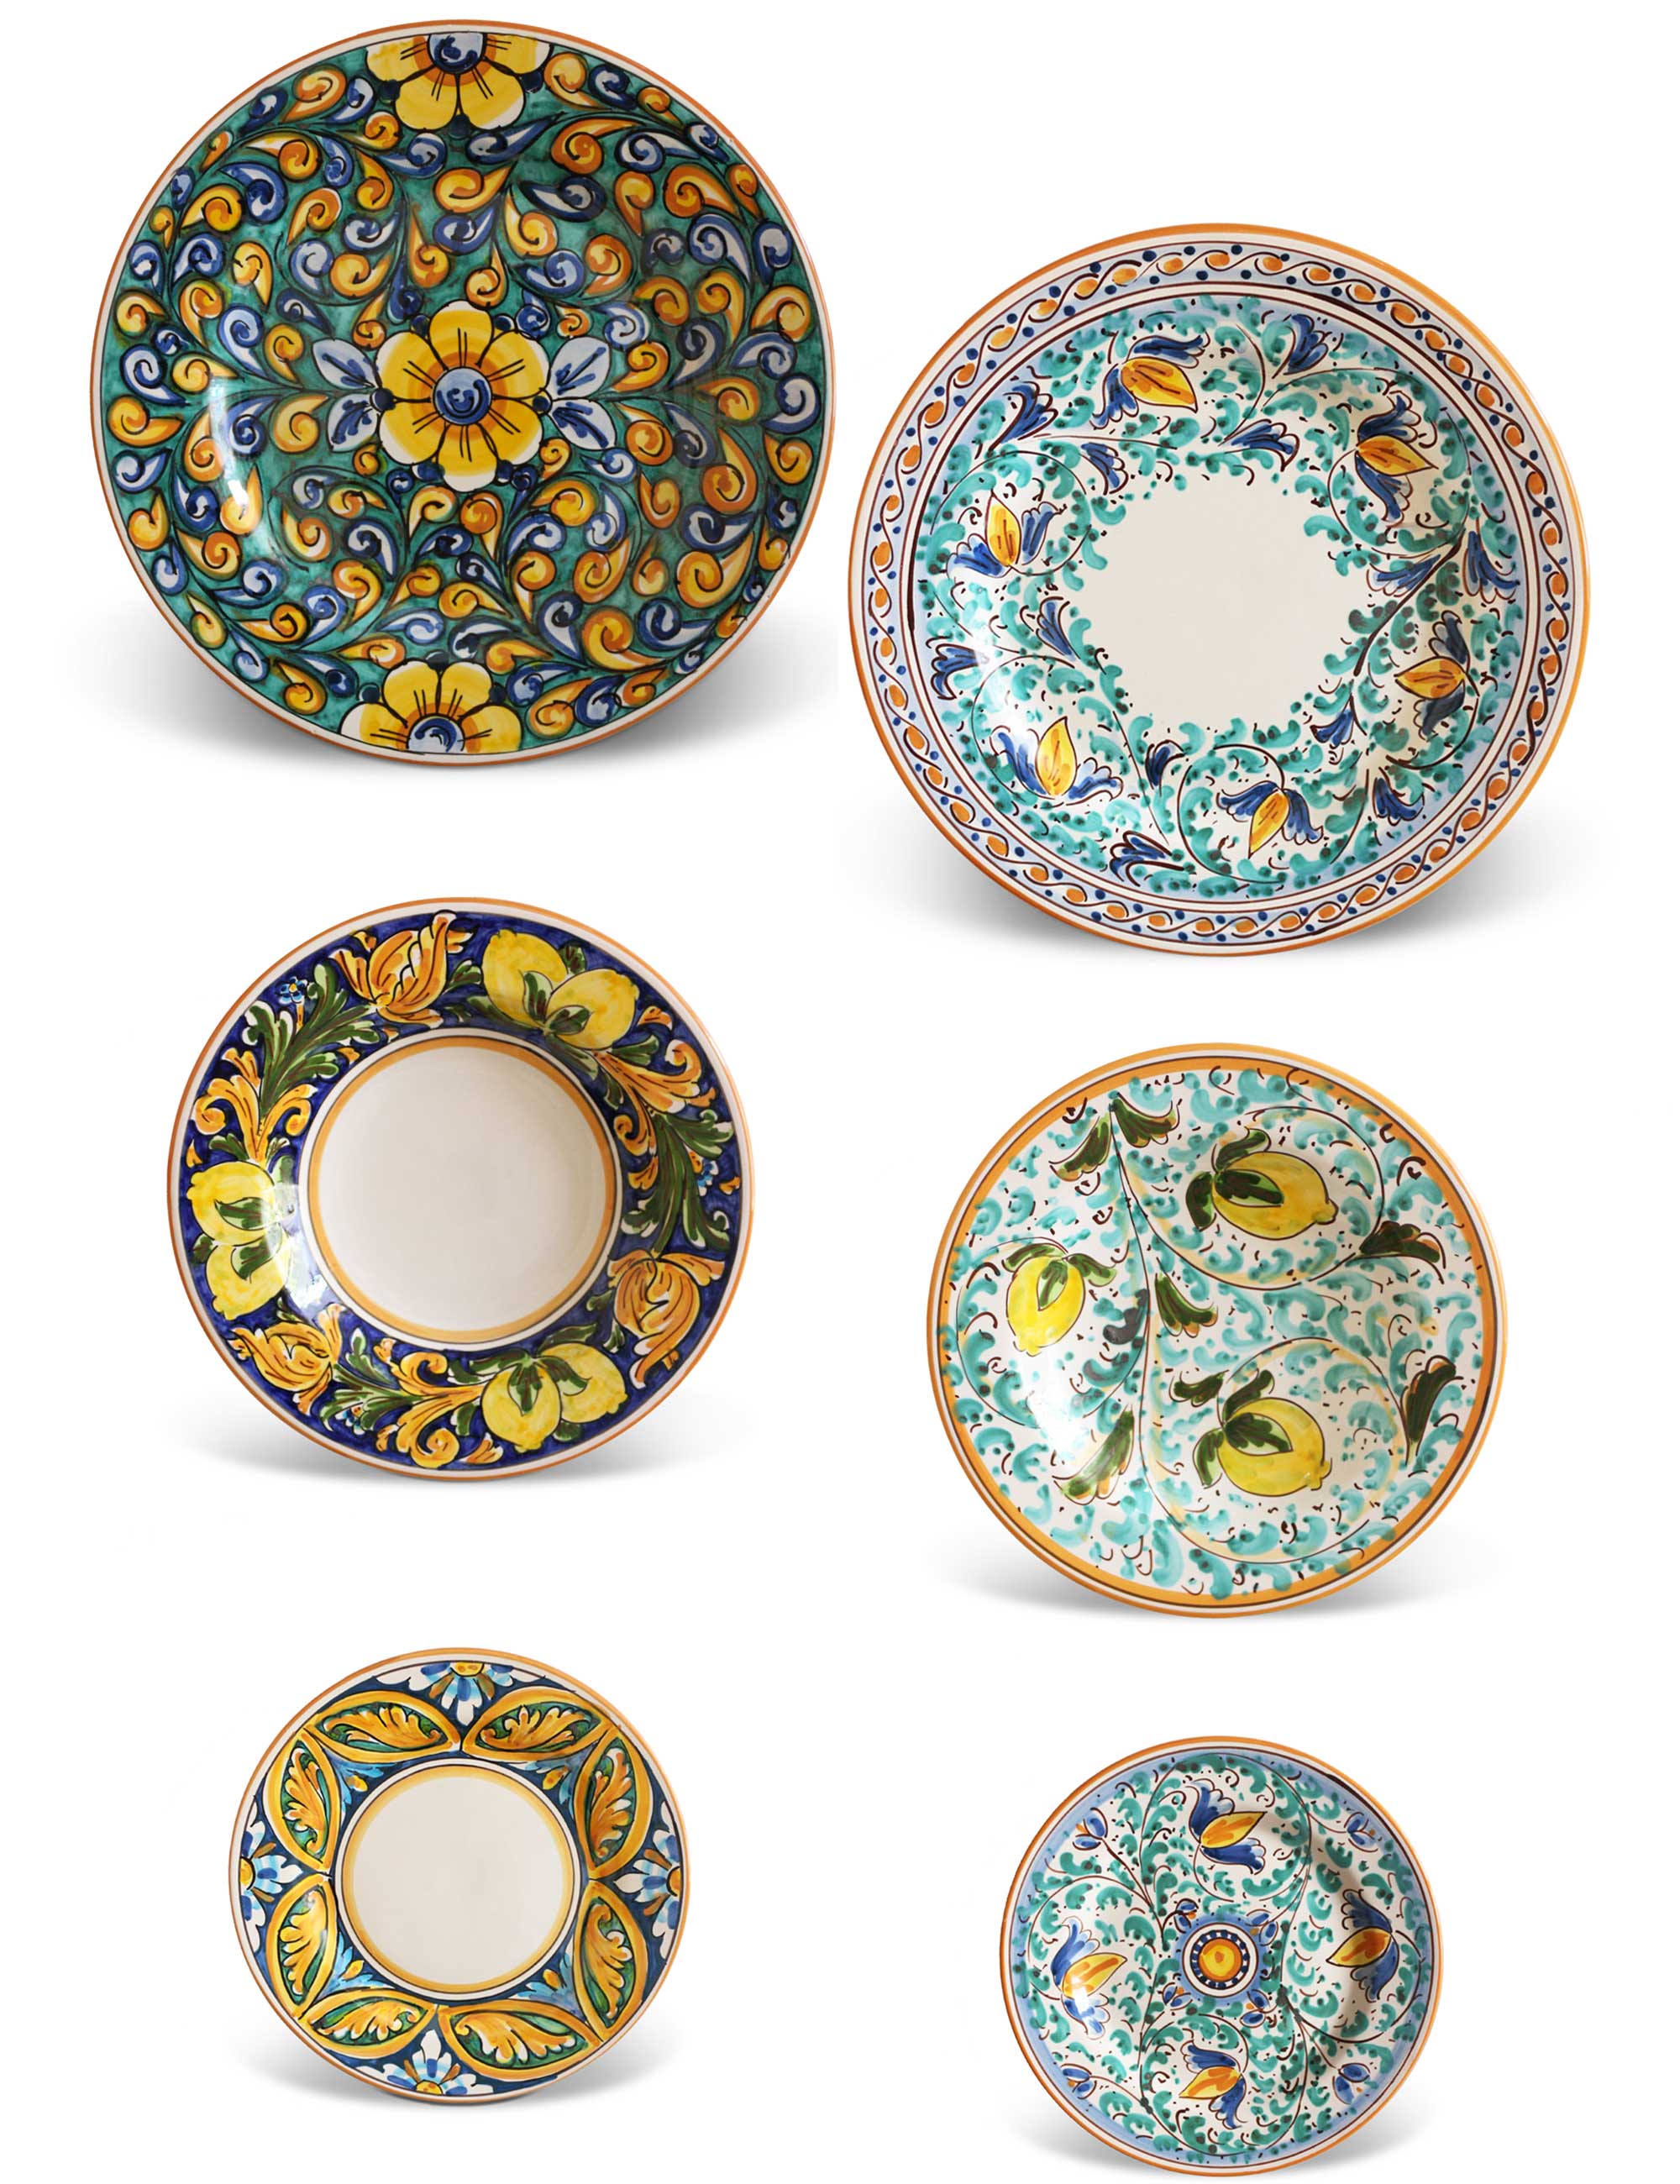 Caltagirone handcrafted ceramics